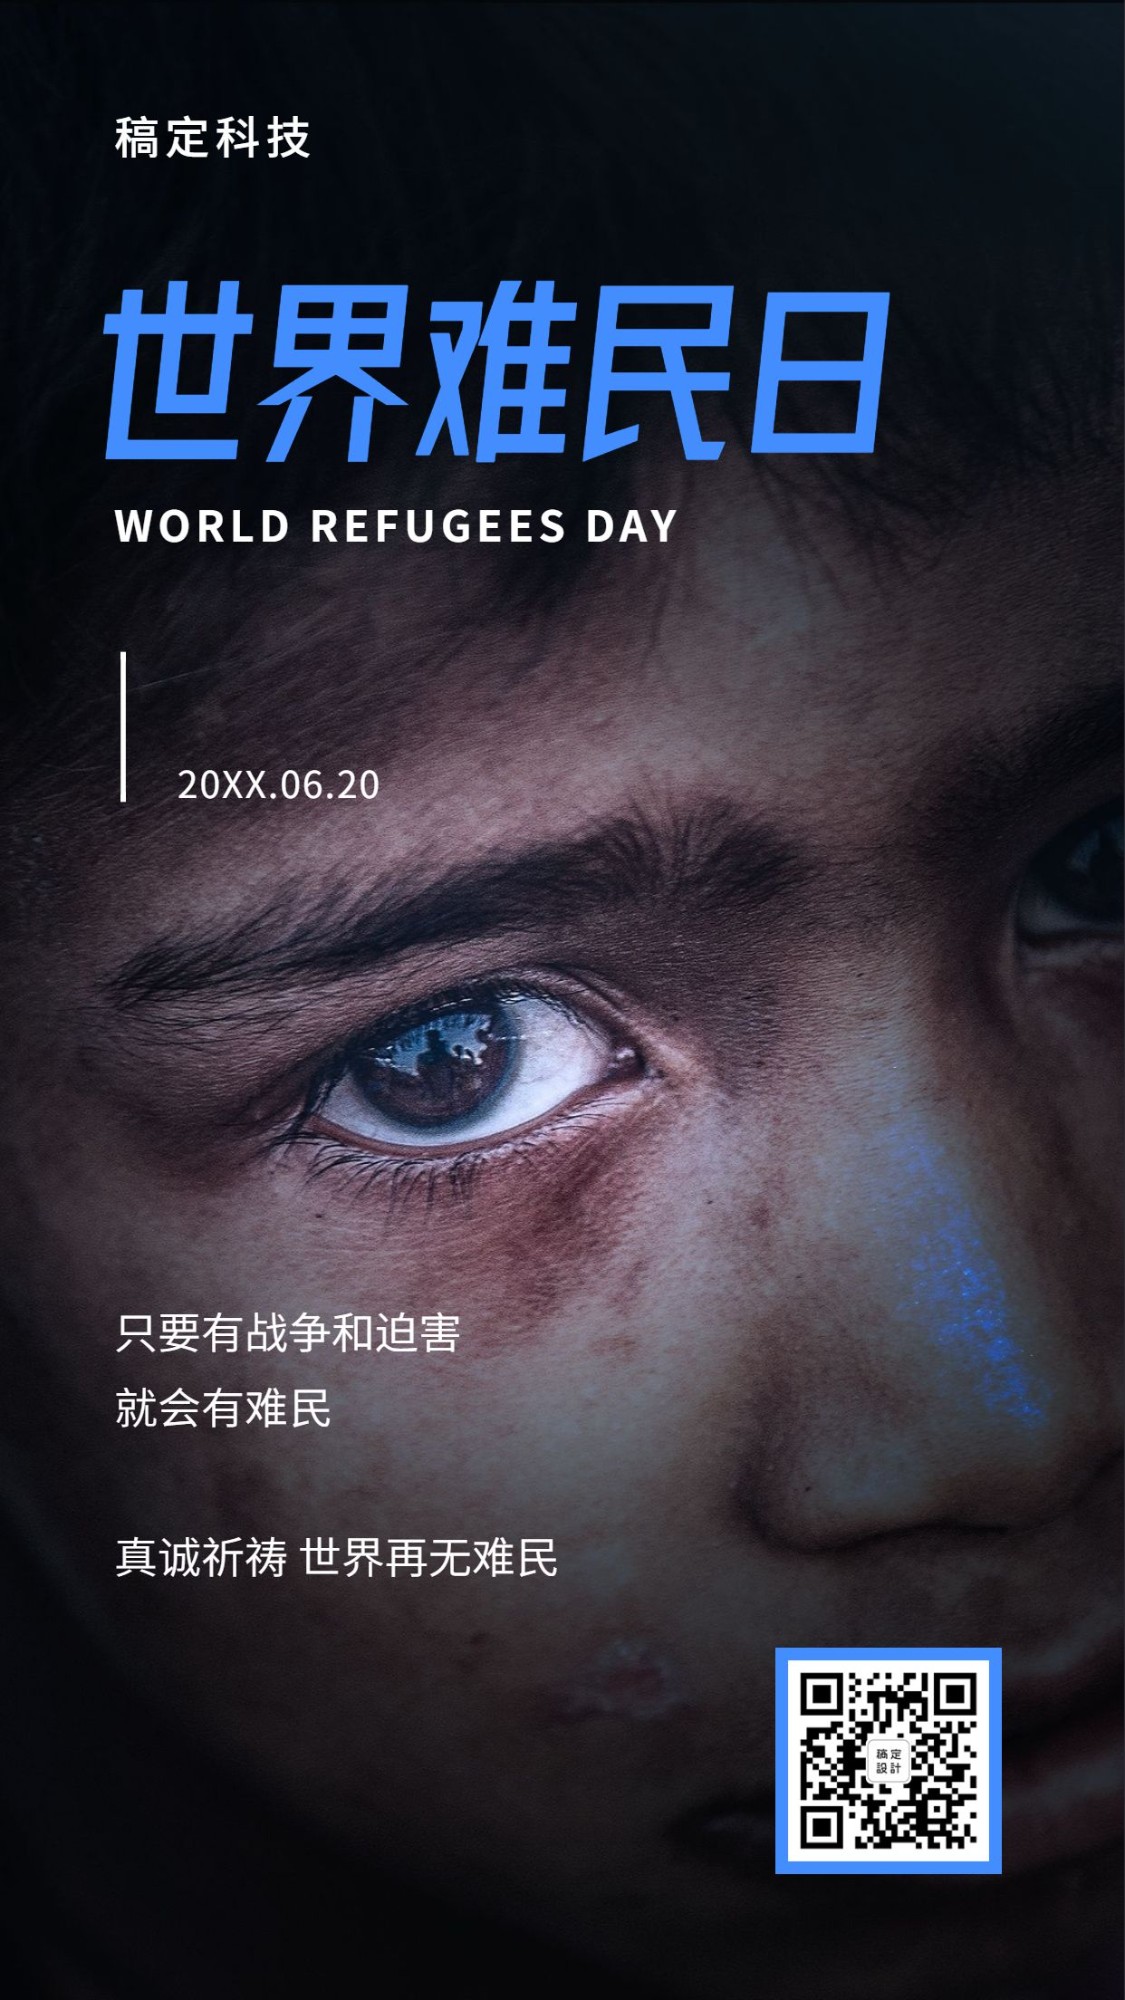 世界难民日救助宣传实景手机海报预览效果